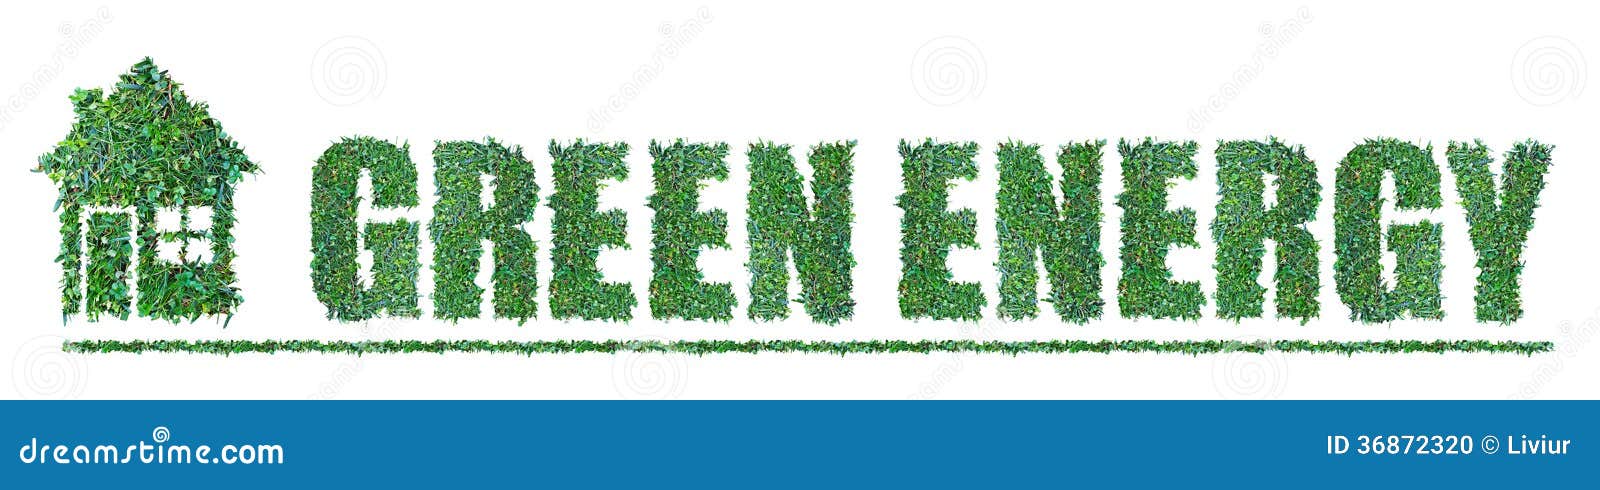 Grön energi. Grönt energibegrepp från gräs på vit bakgrund